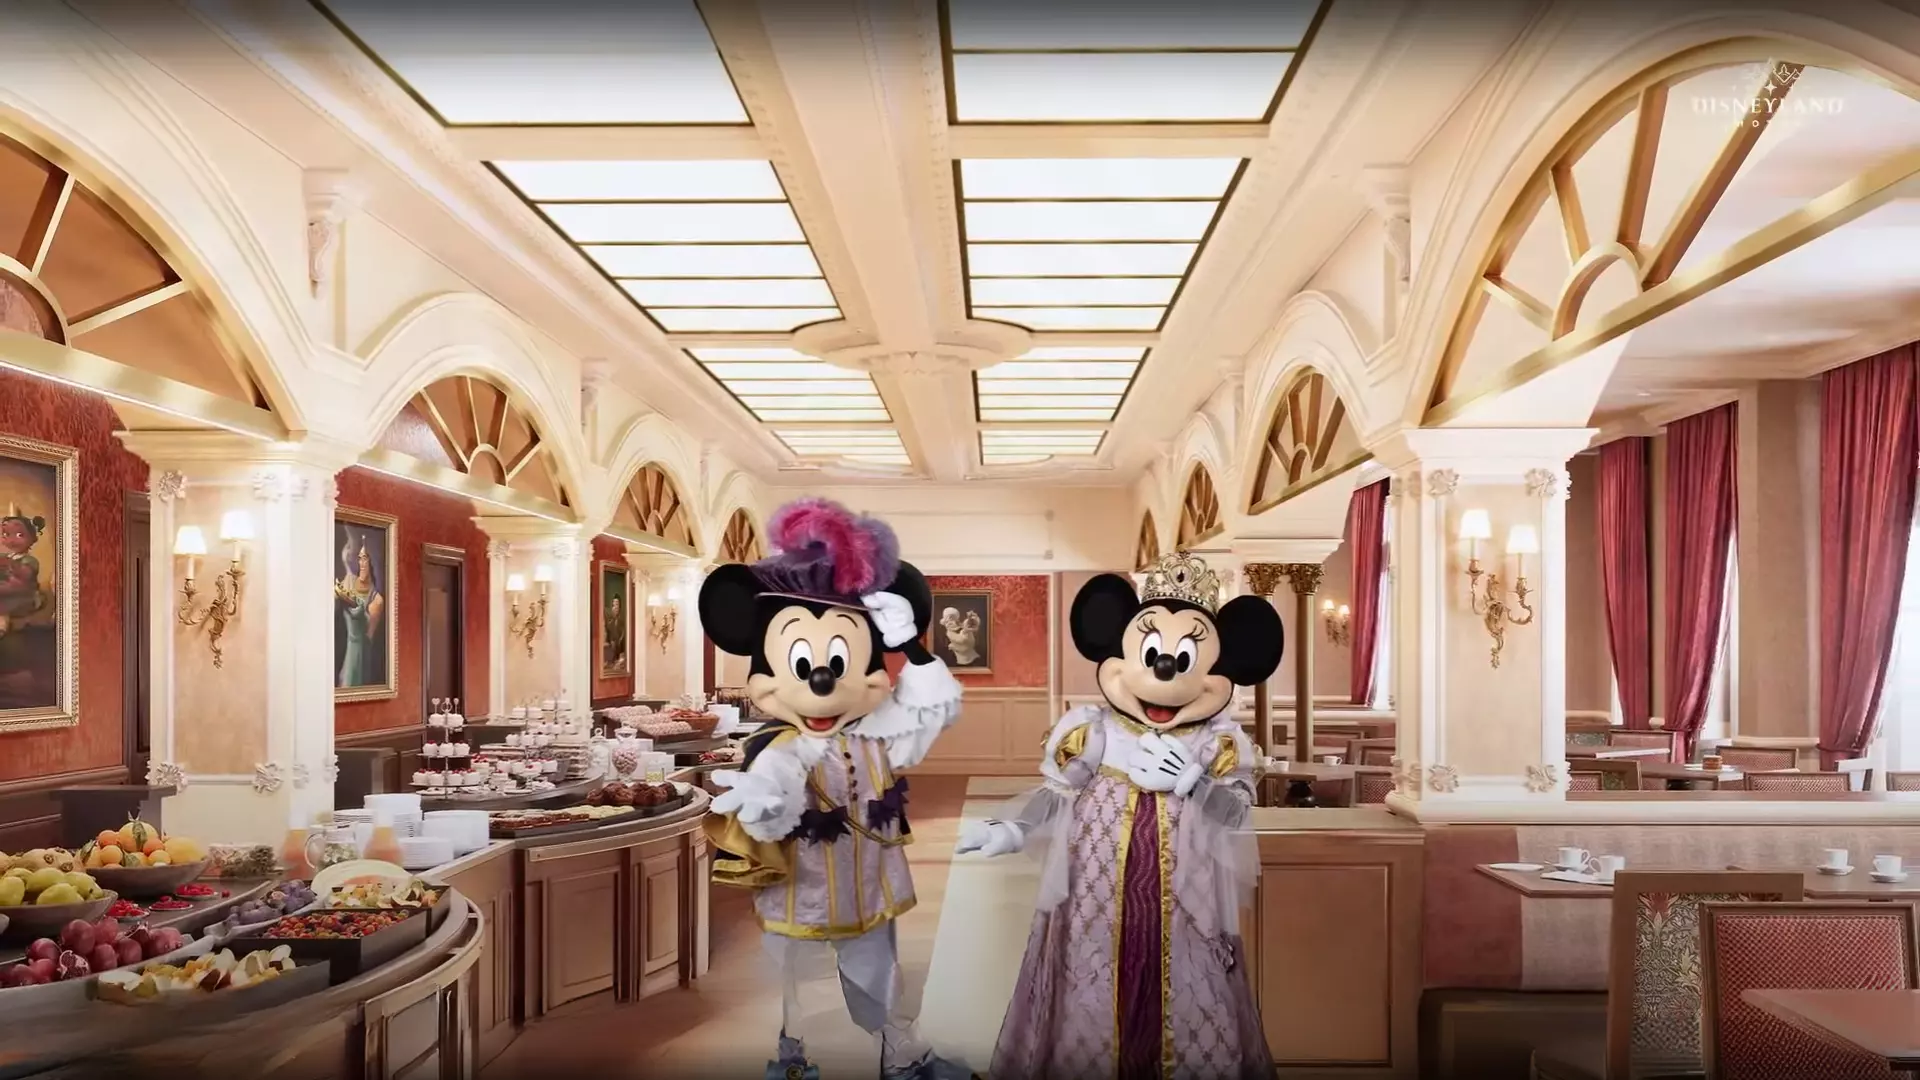 Personnages que nous retrouverons à l'ouverture du Disneyland Hôtel - Disneyland Paris